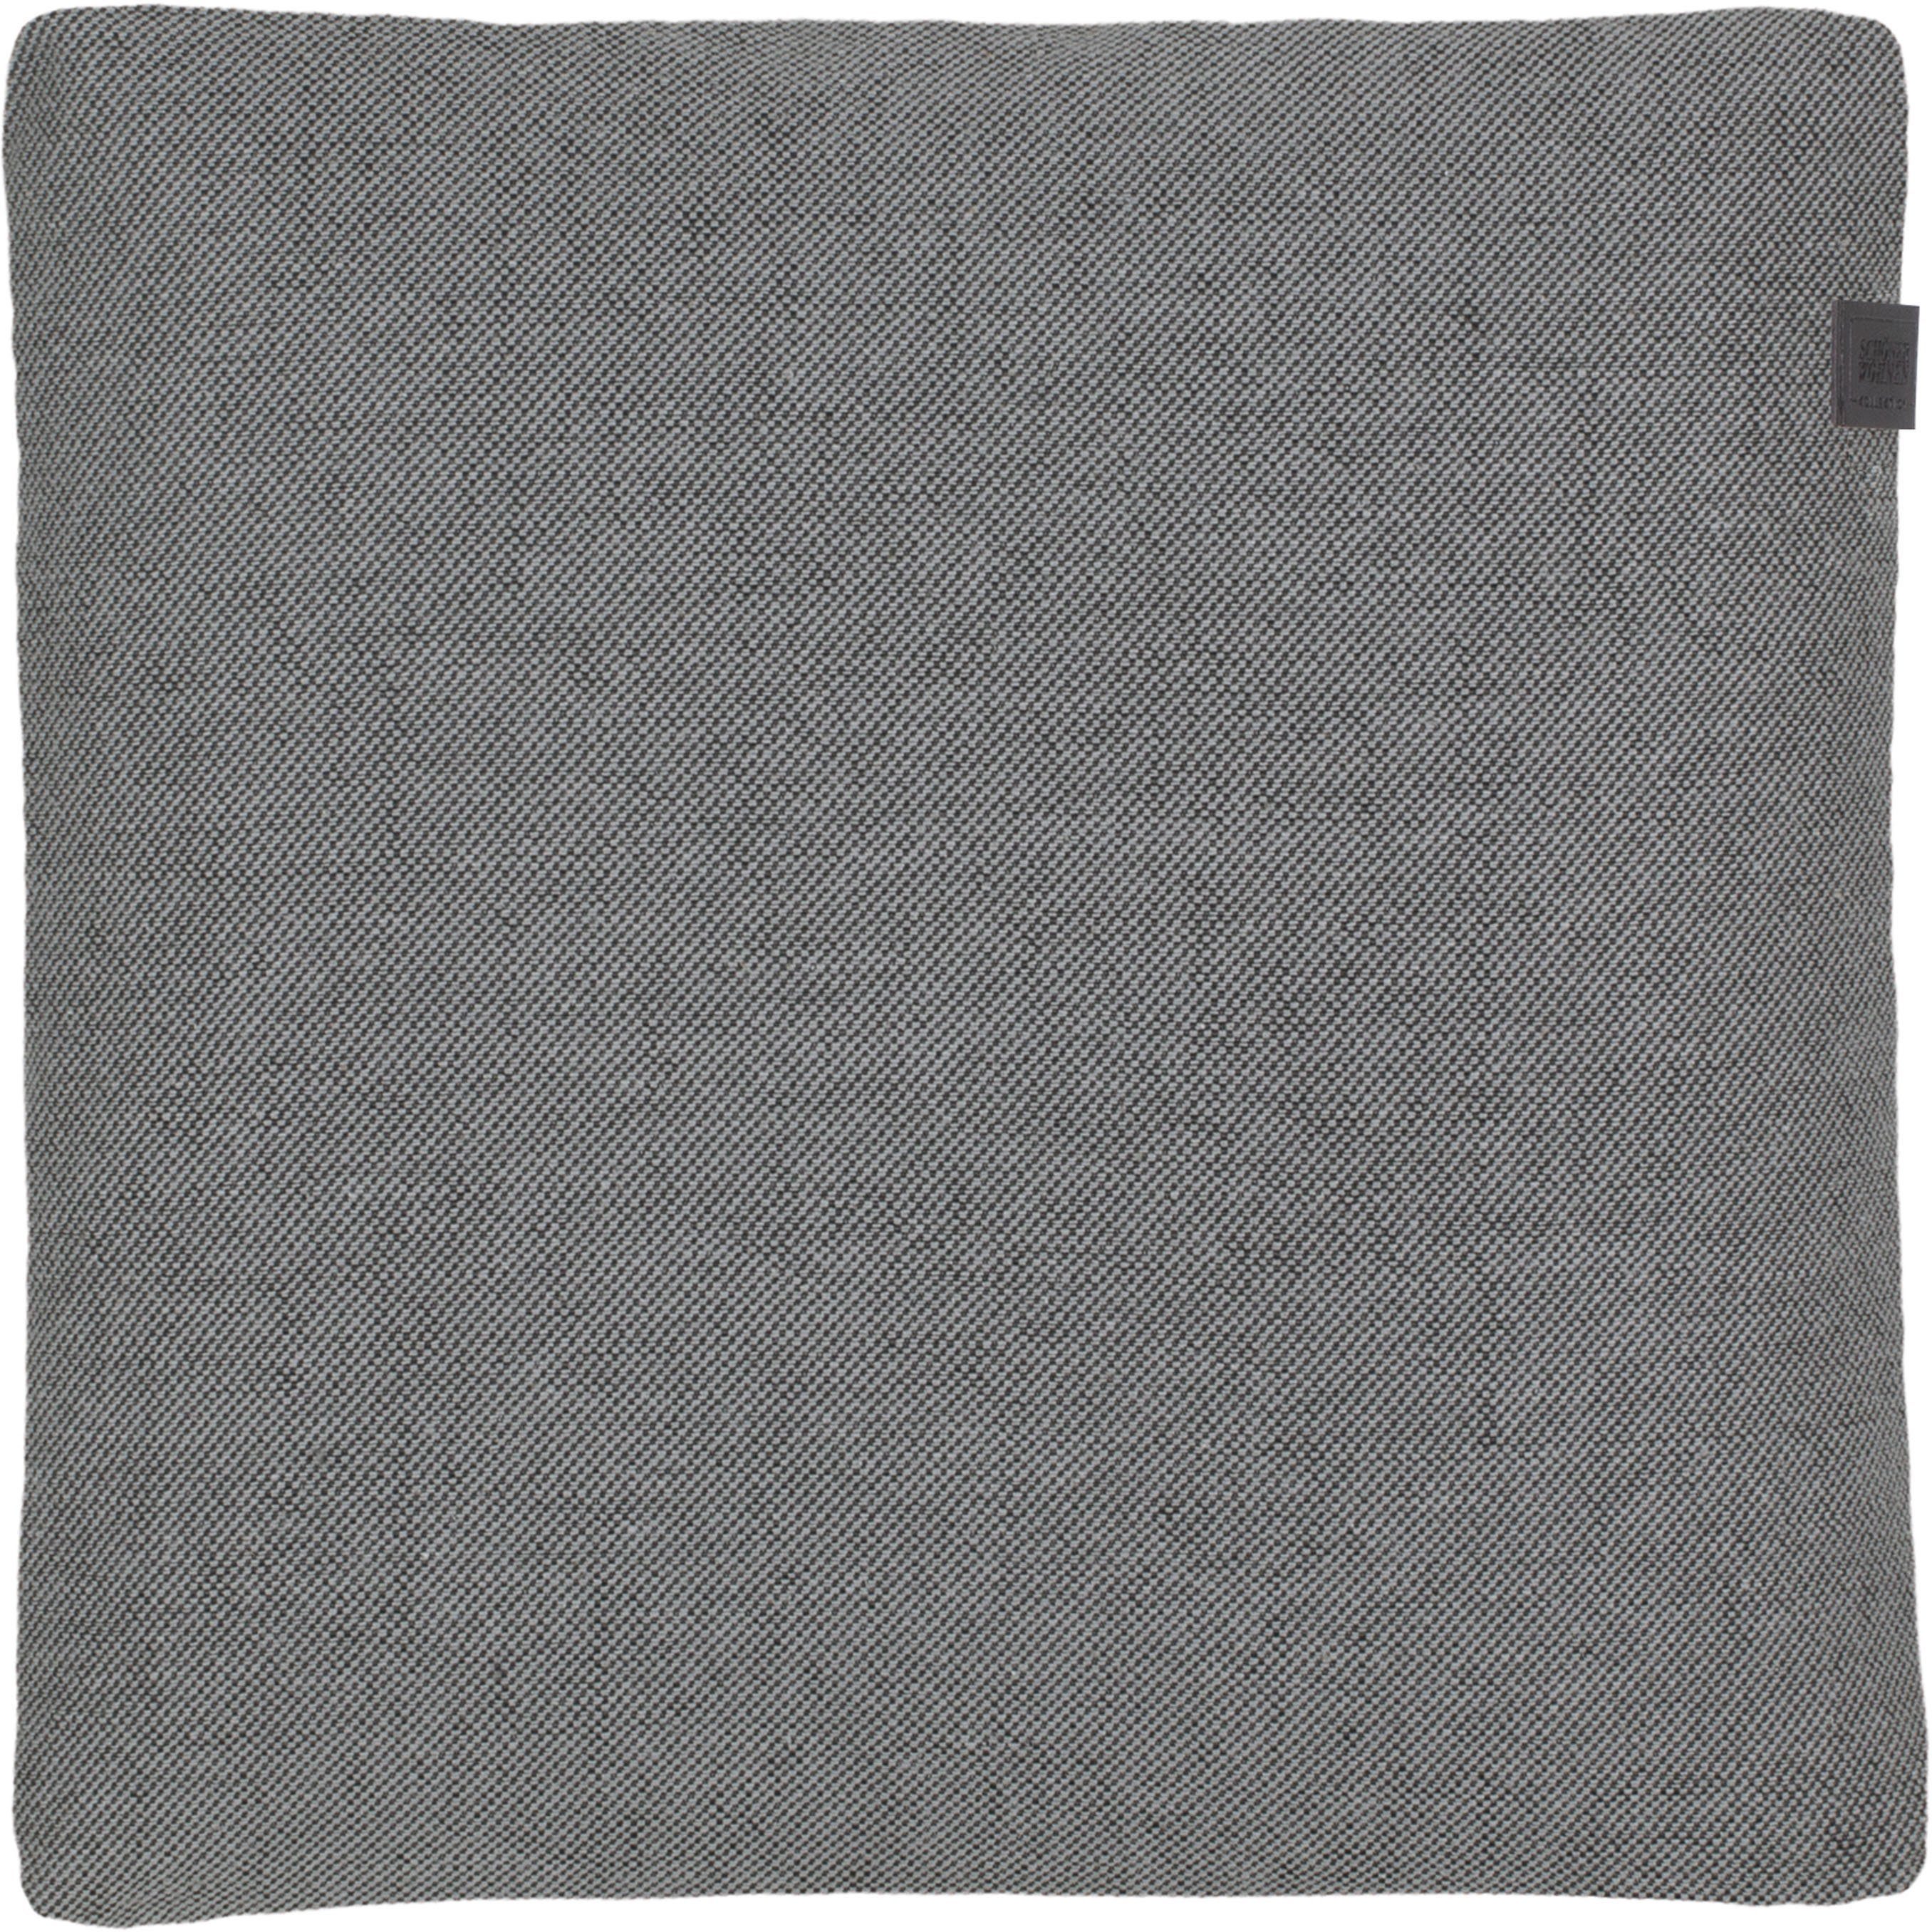 SCHÖNER WOHNEN-Kollektion Dekokissen Solo, 38x38 cm grey